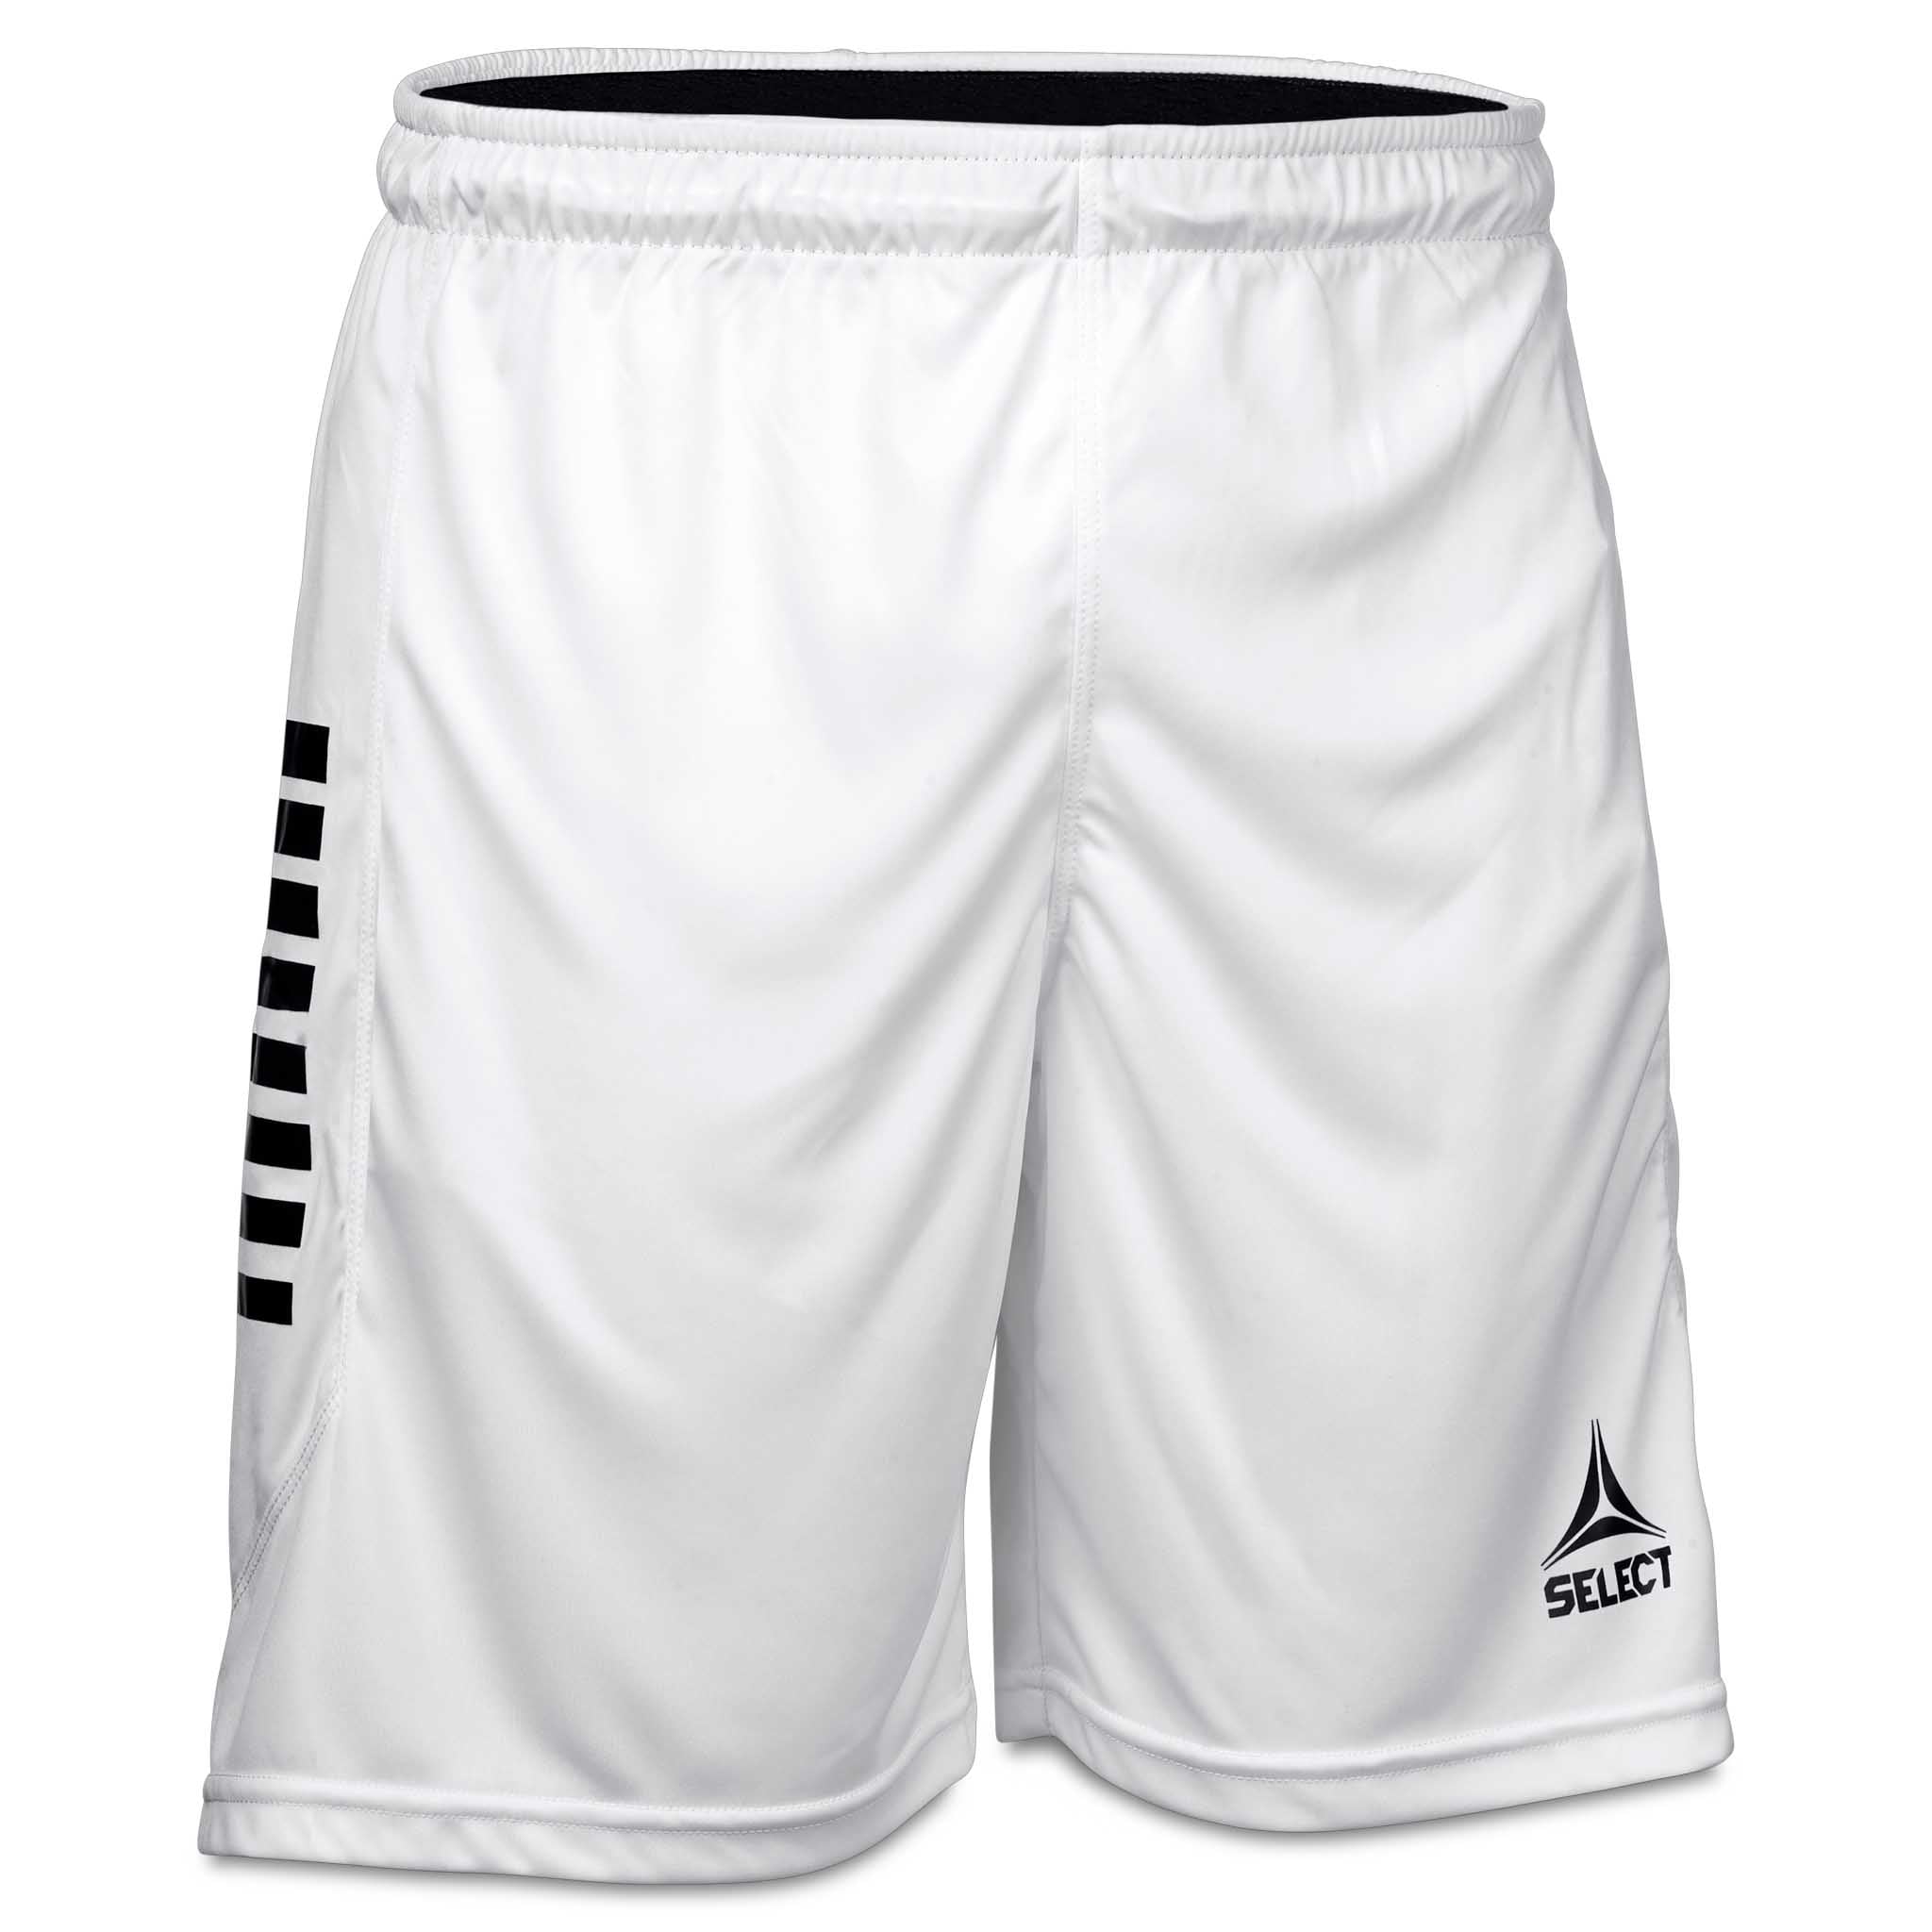 Monaco shorts - Barn #farge_hvit/svart